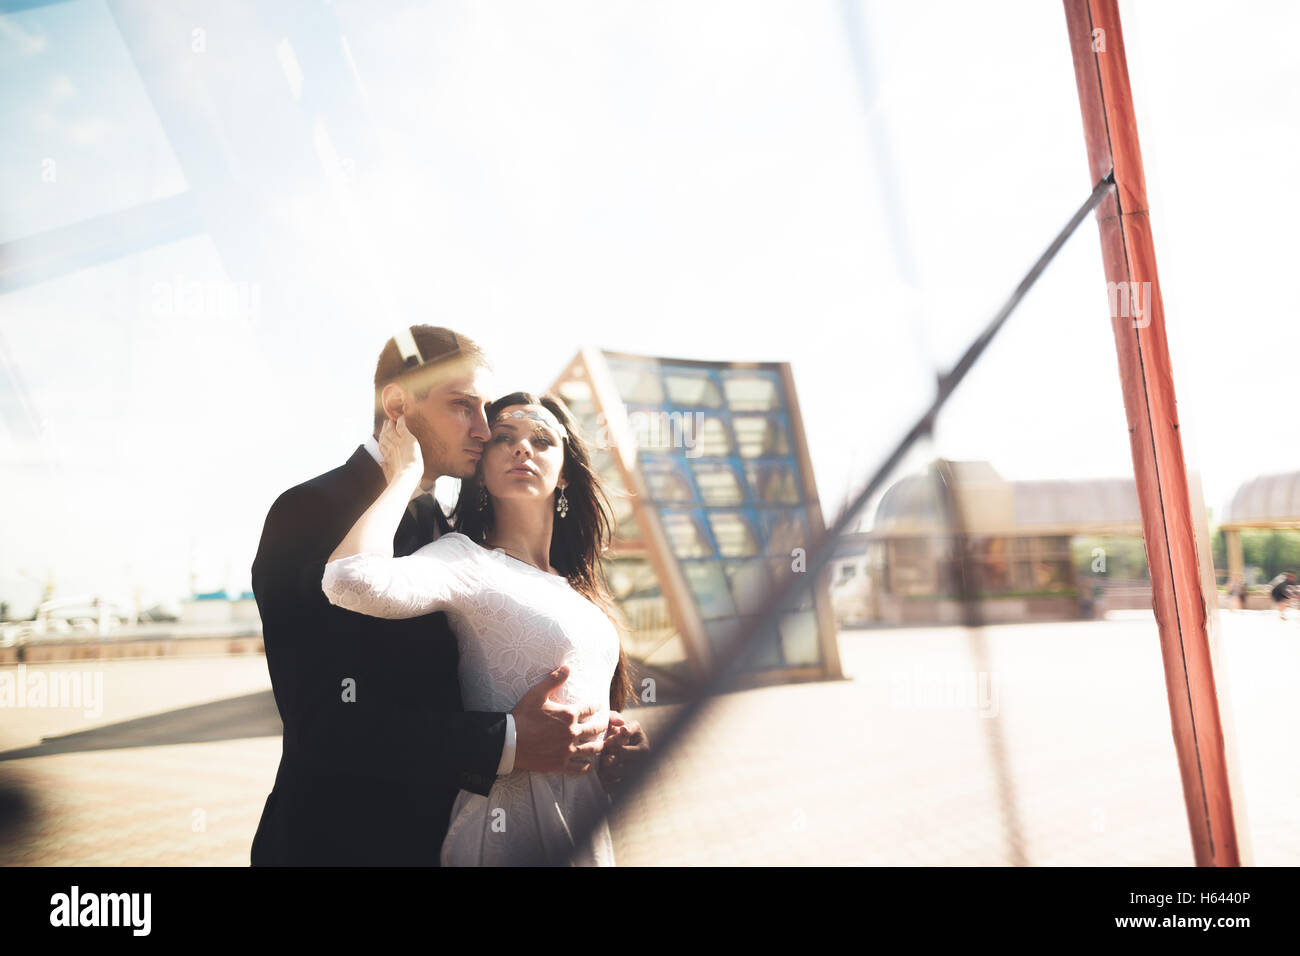 Stilvolle liebende Paar küssen und umarmen in der Nähe von modernen Gebäude Stockfoto